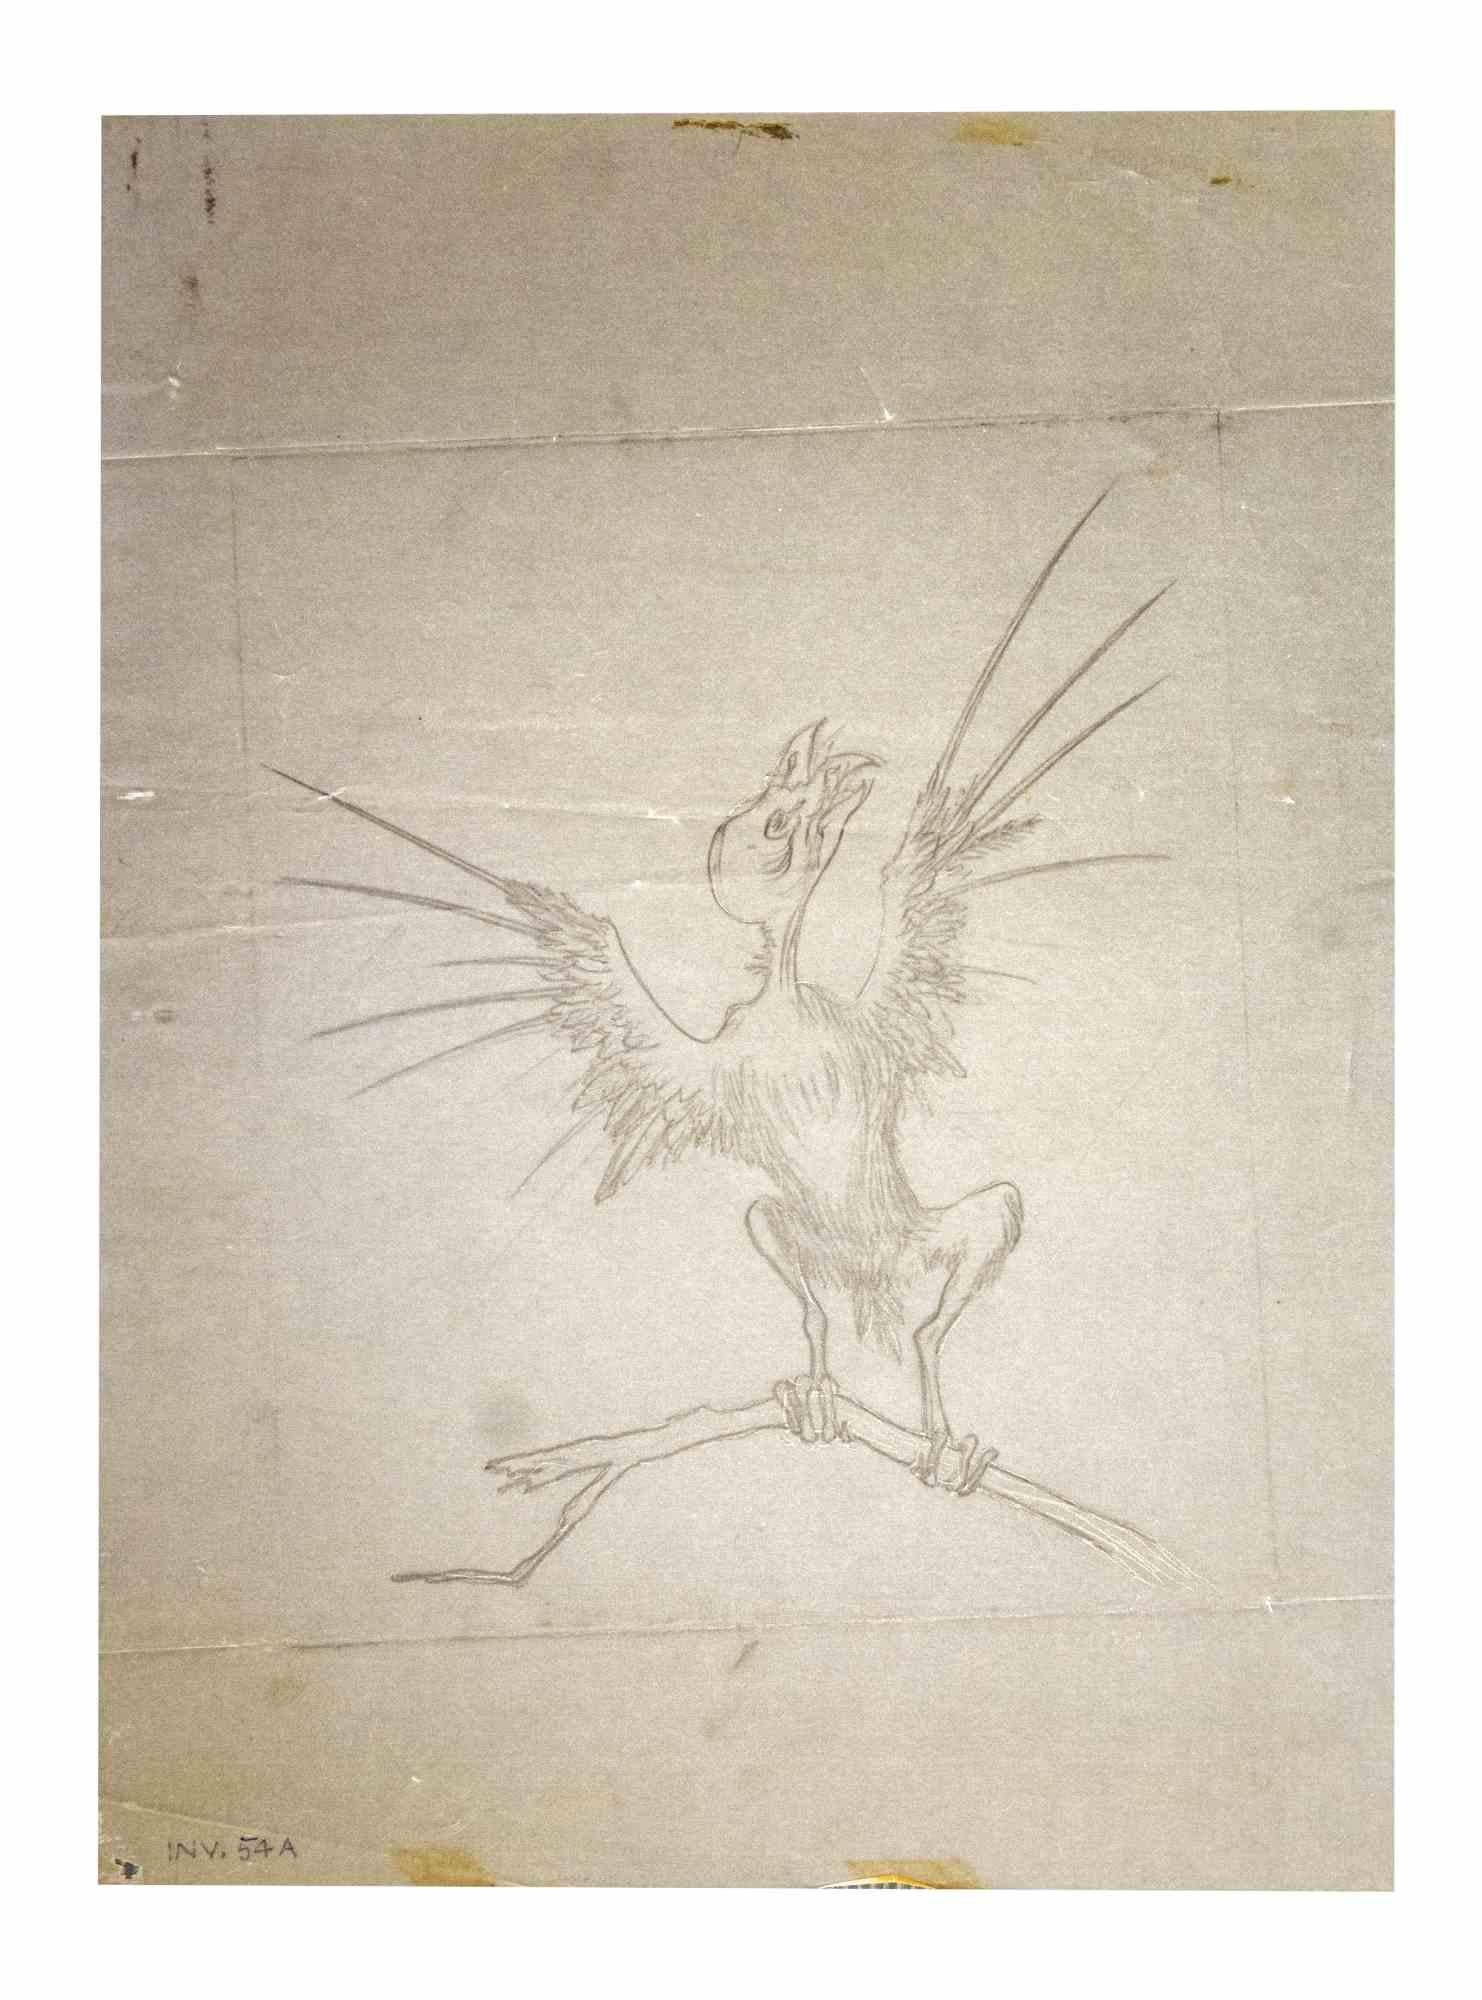 Der Vogel ist eine Originalzeichnung mit Bleistift auf Papier von Leo Guida aus den 1970er Jahren.

Guter Zustand mit einigen Anzeichen von Stick auf der unteren.

Leo Guida  (1992 - 2017). Mit seinem Gespür für aktuelle Themen, künstlerische